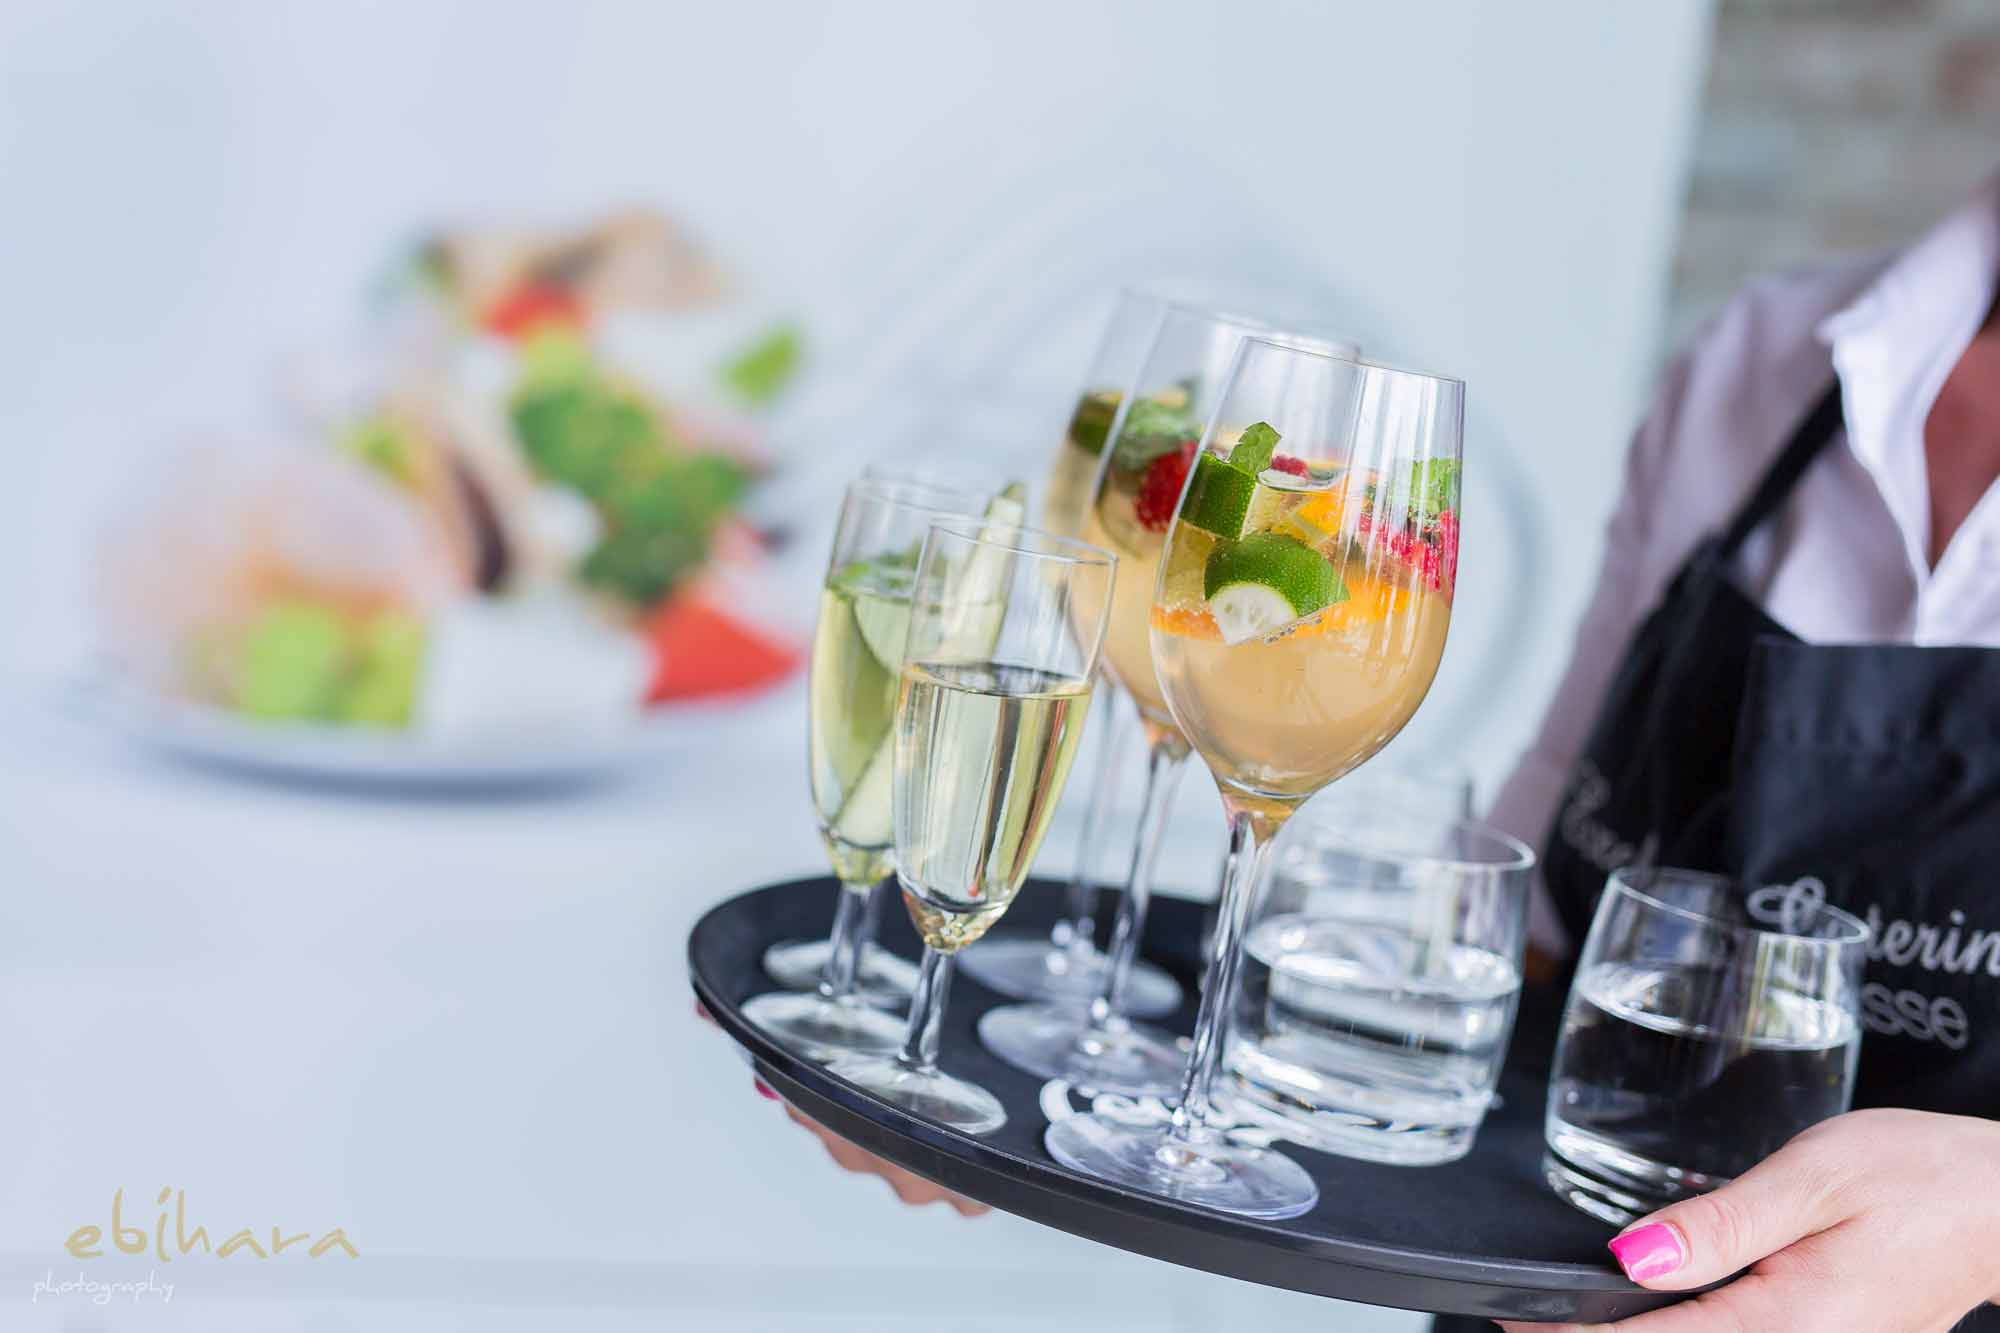 Ess Hochzeitscatering verschiedene Drinks wie Sekt und Cocktails auf einem Tablett präsentiert Die Ess Klasse - Catering, Exklusives Catering für Business, Hochzeiten & Events in Salzburg, Wien und München